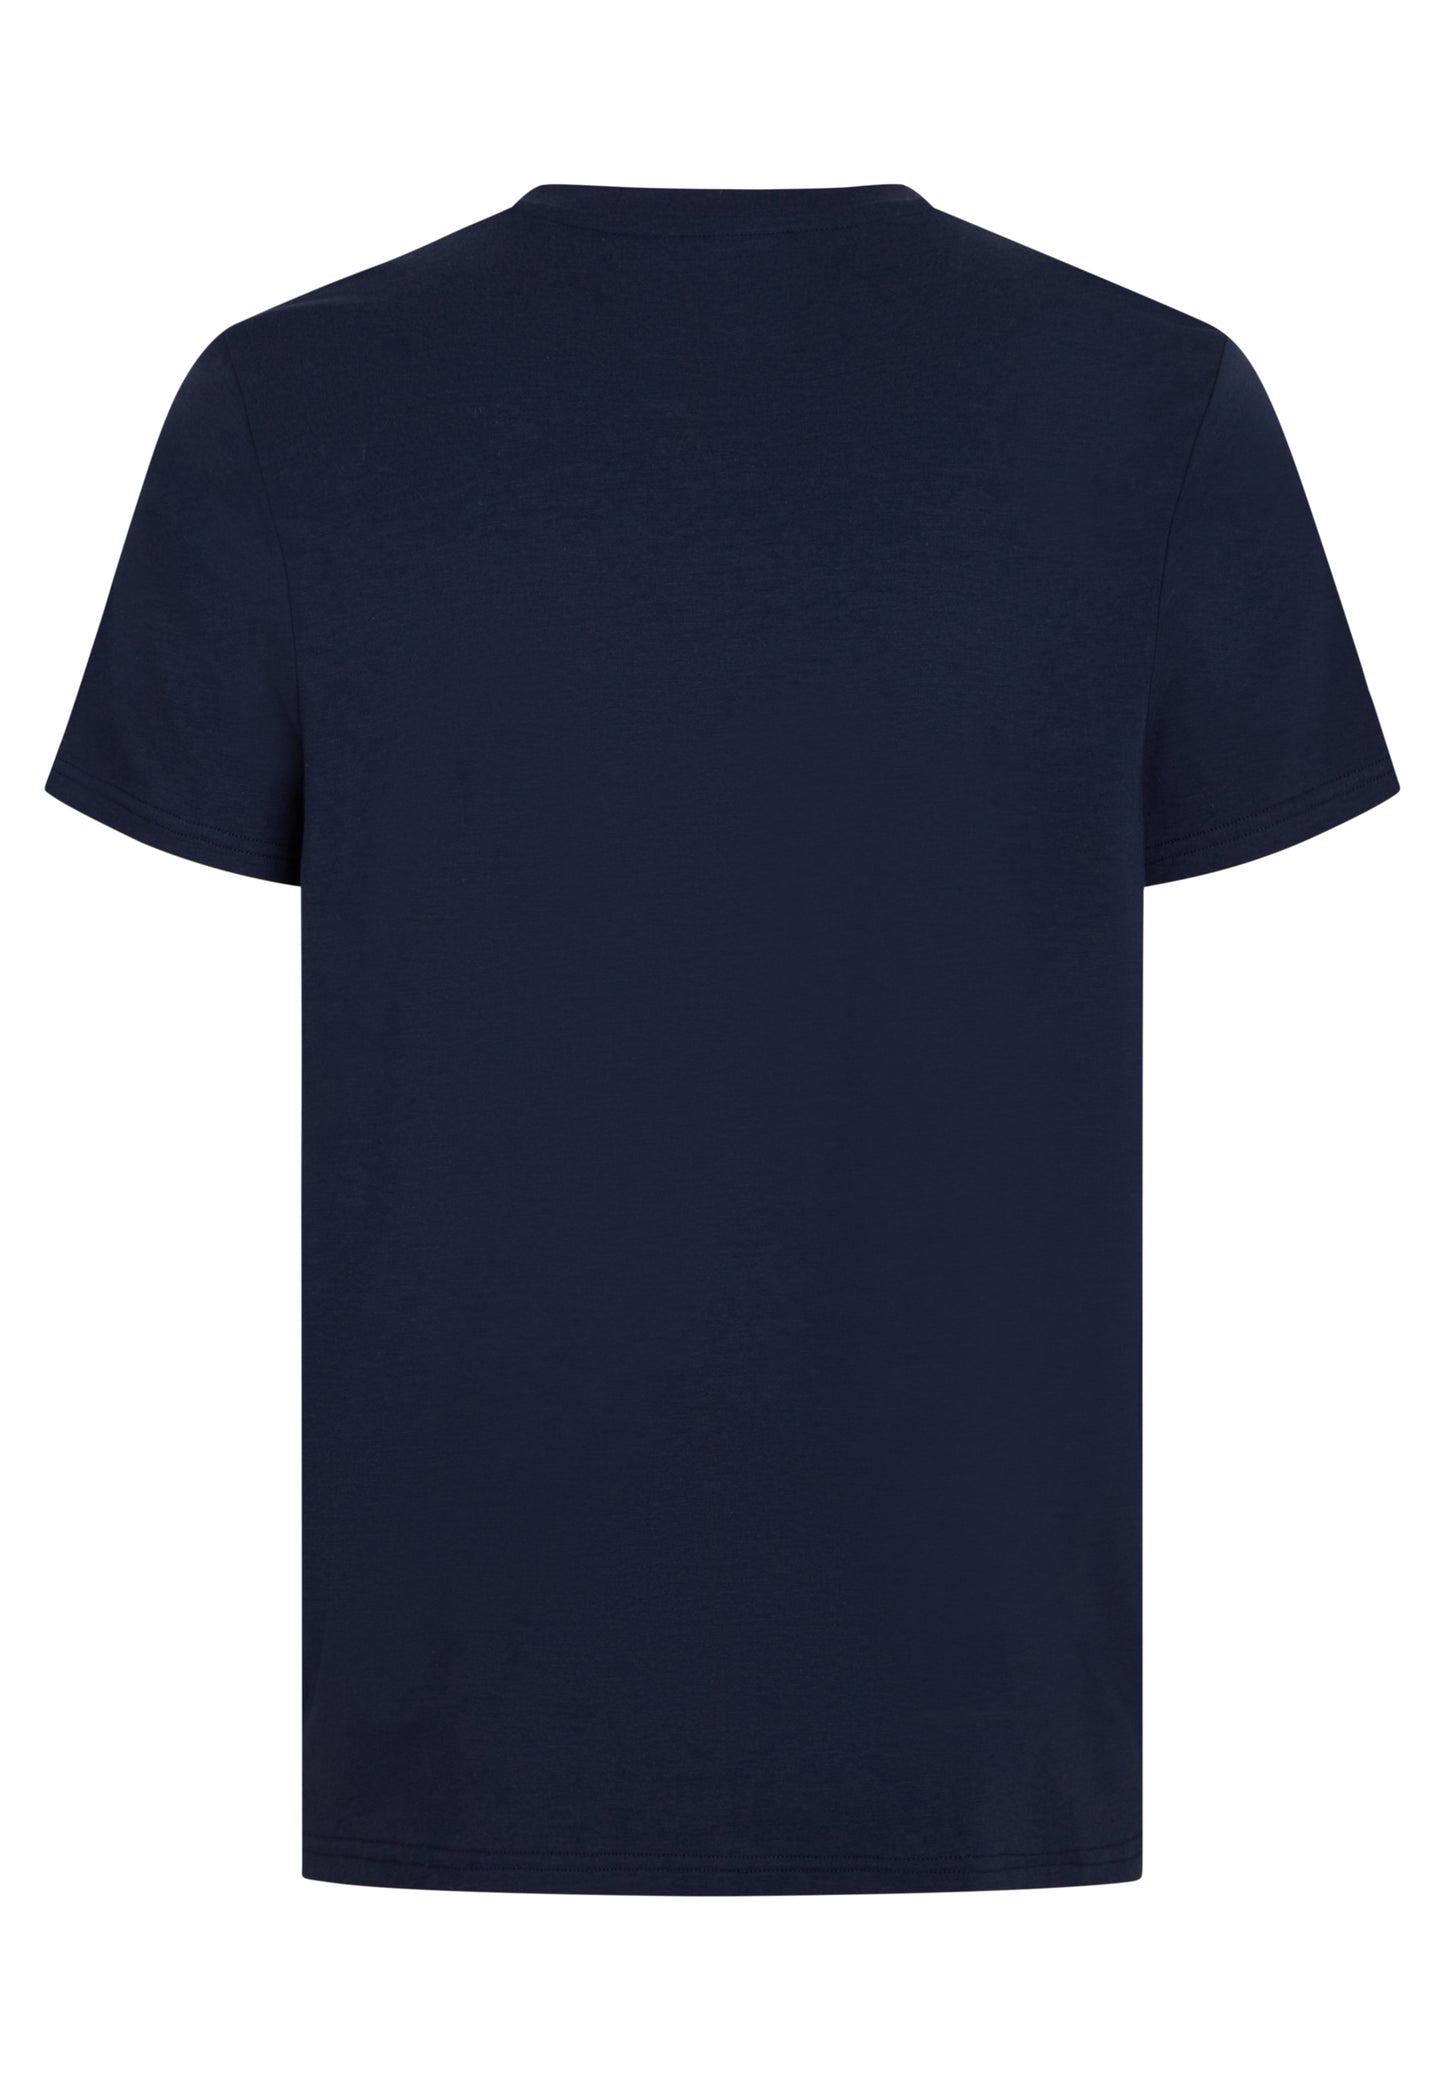 Bambus T-shirt til mænd navy